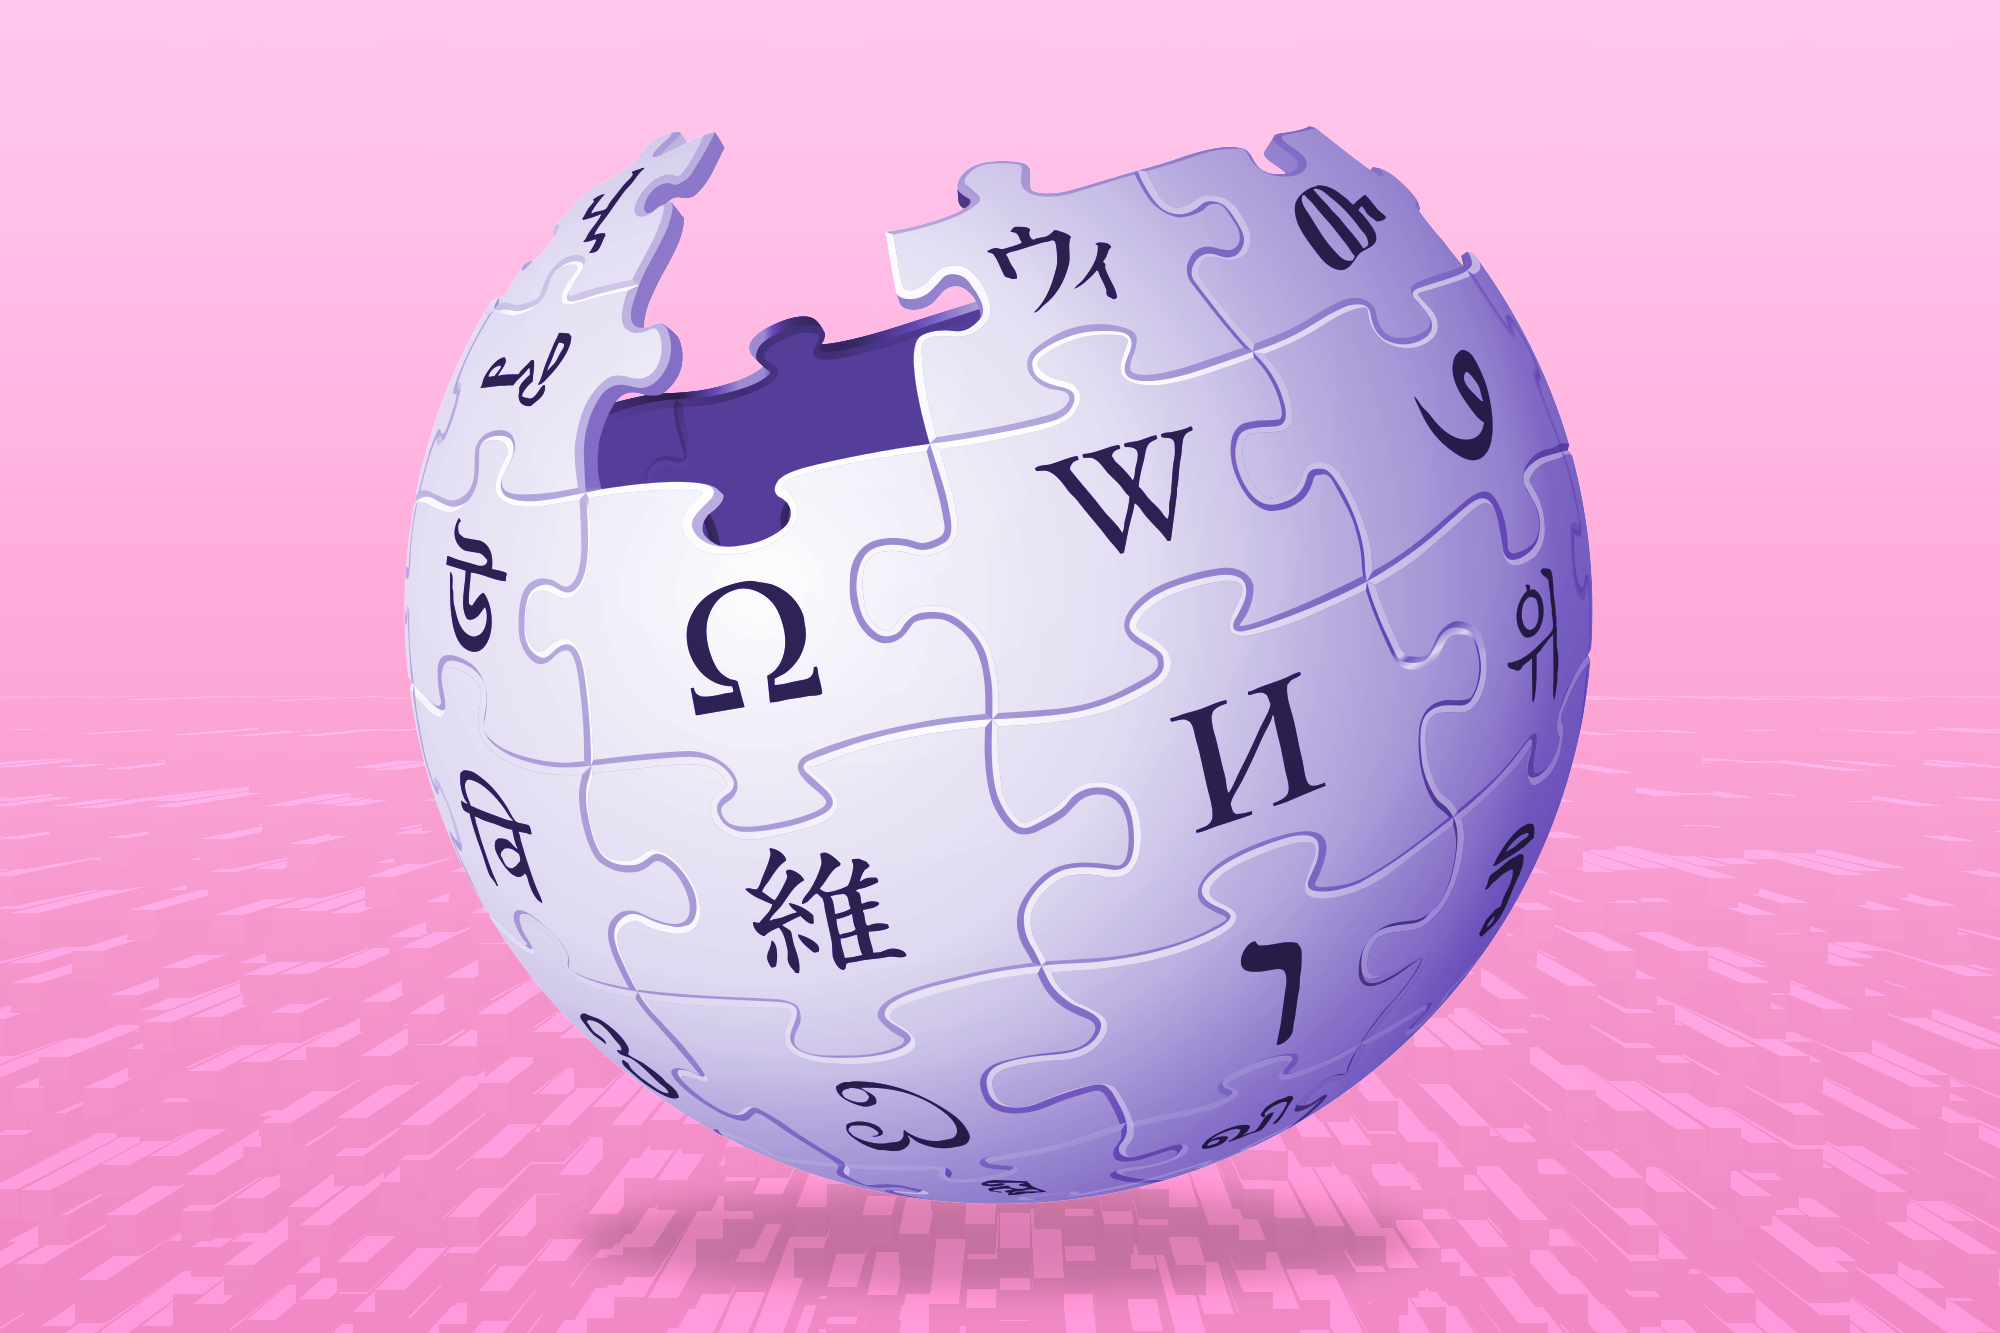 احتمالاً می توانید پربیننده ترین مقاله ویکی پدیا در سال ۲۰۲۳ را حدس بزنید